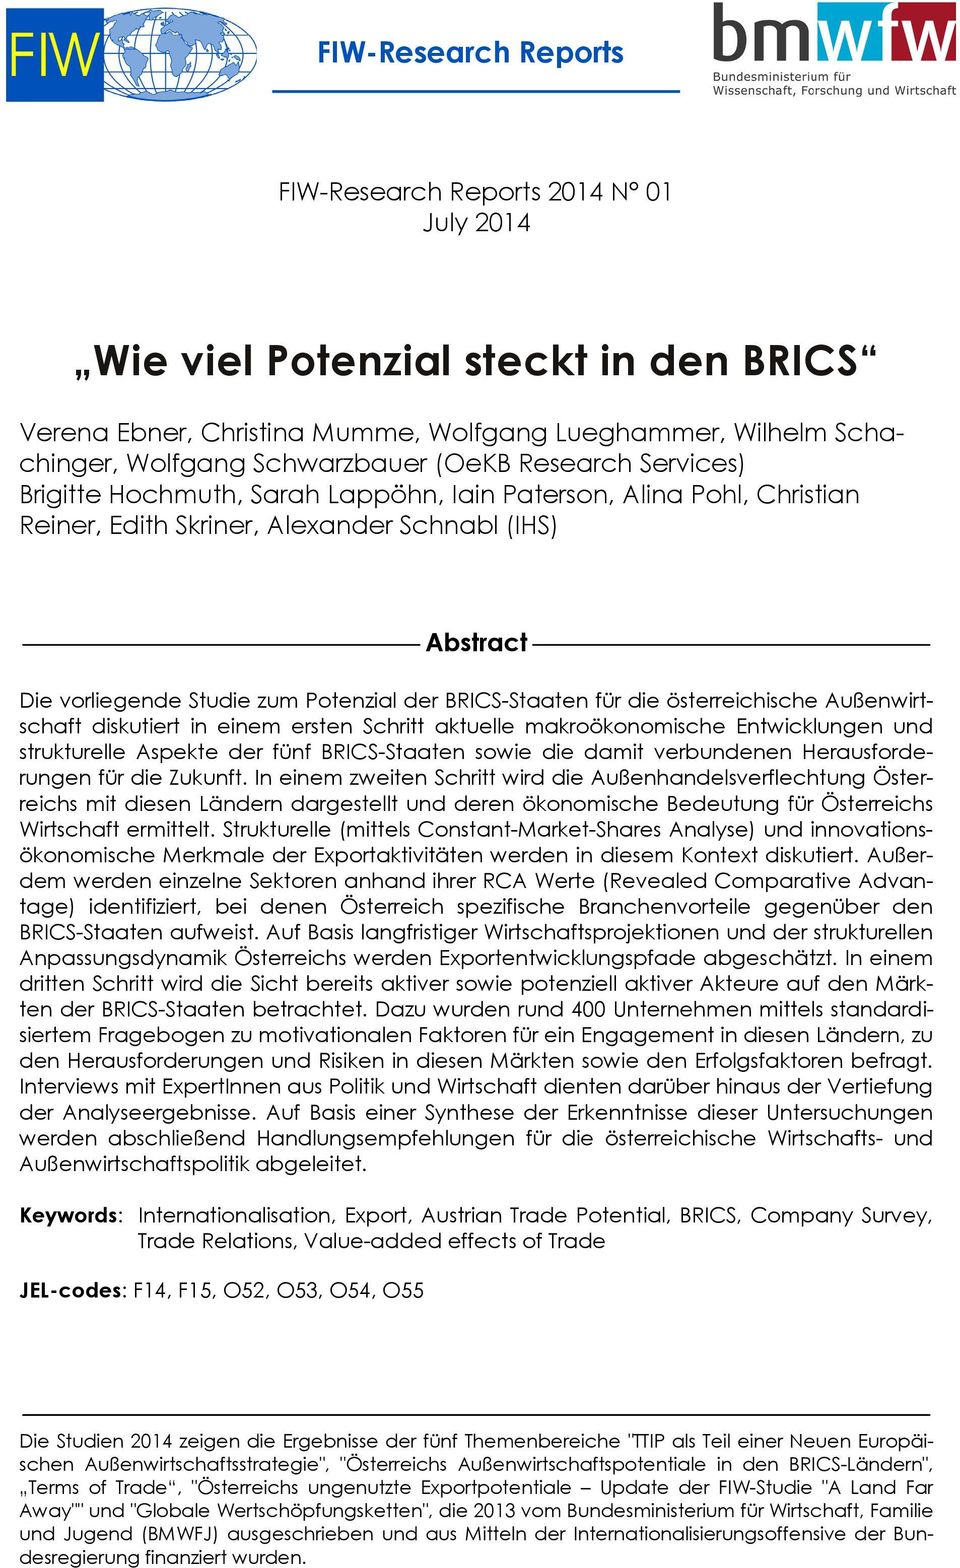 für die österreichische Außenwirtschaft diskutiert in einem ersten Schritt aktuelle makroökonomische Entwicklungen und strukturelle Aspekte der fünf BRICS-Staaten sowie die damit verbundenen